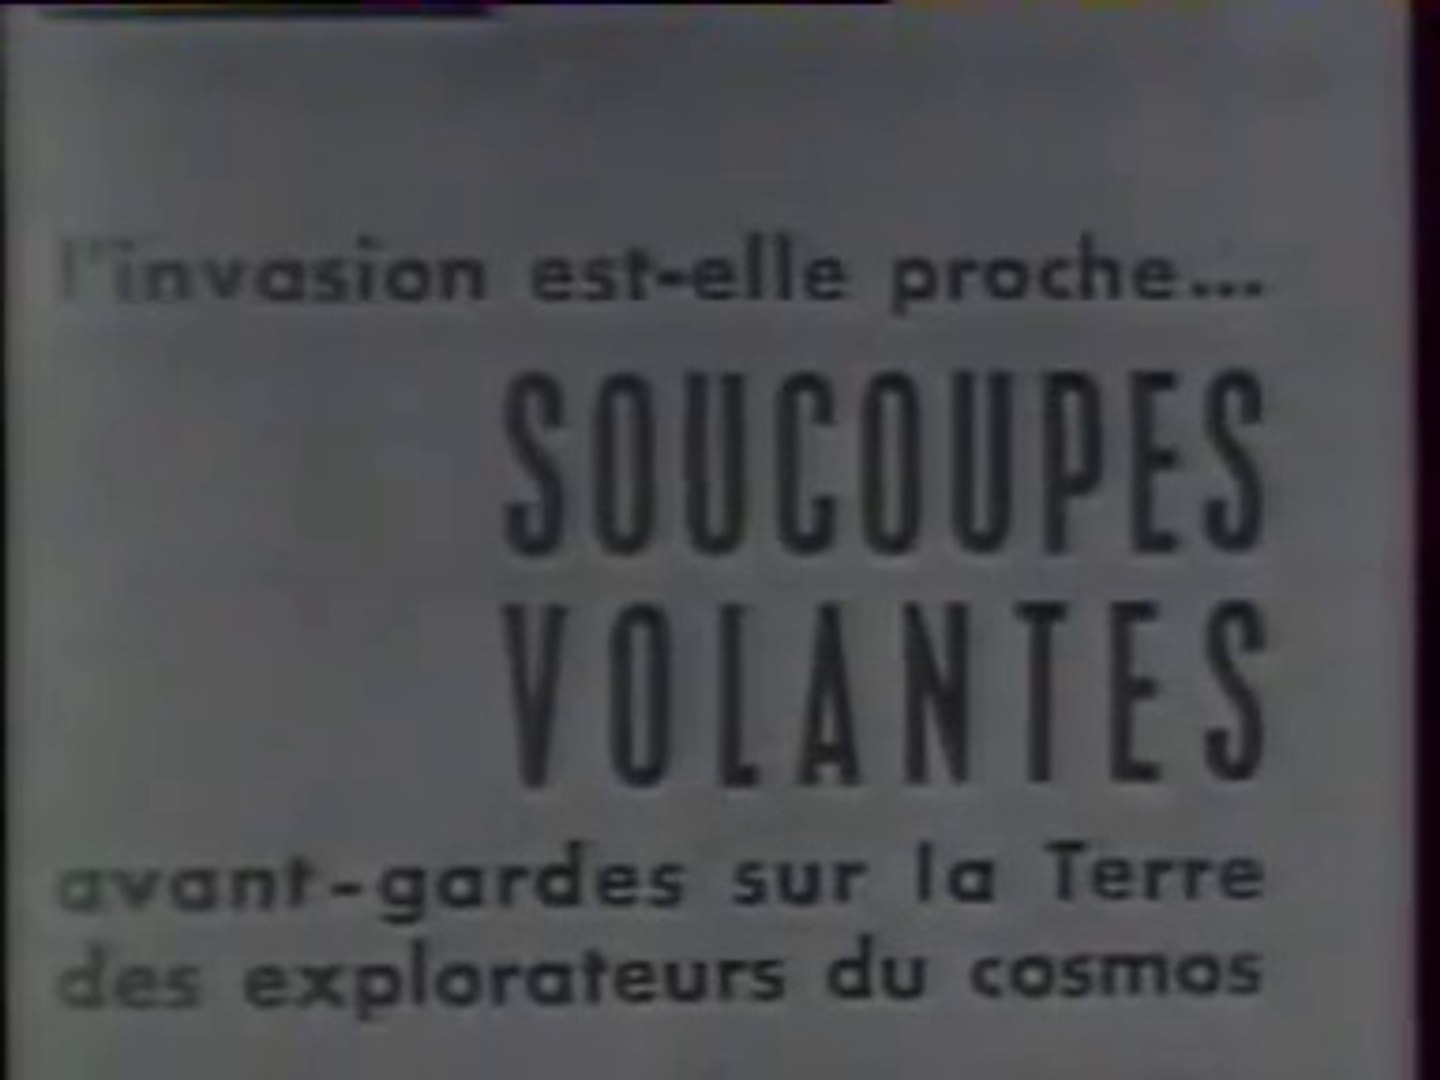 Aimé Michel et Les Soucoupes Volantes (1965) - Vidéo Dailymotion